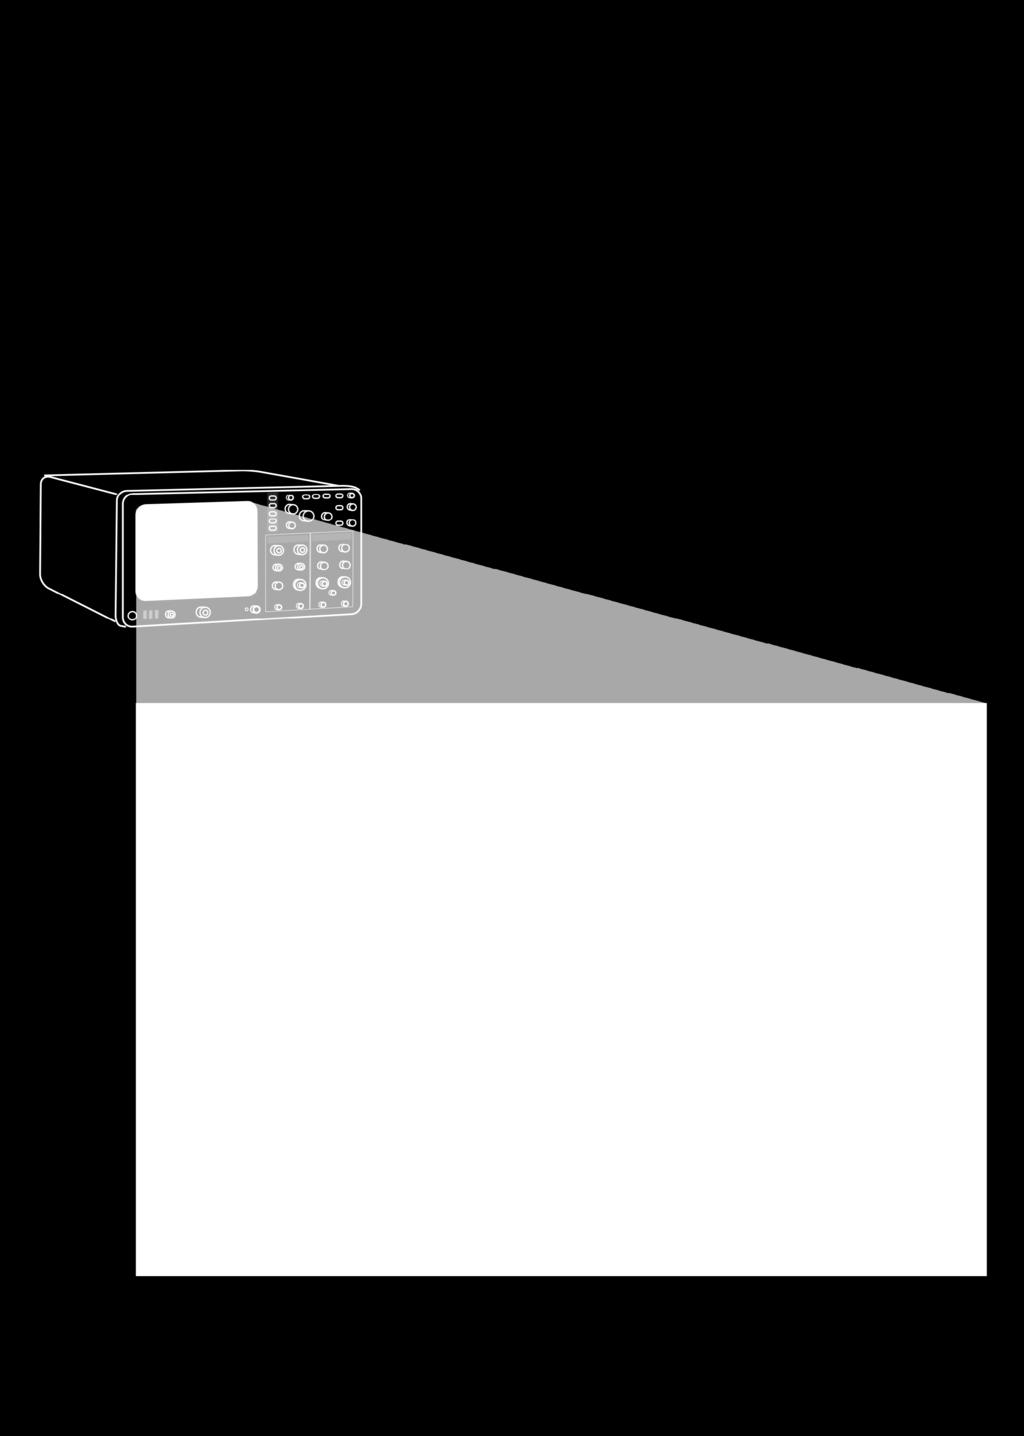 Persino con un notebook, l'area di visualizzazione di un oscilloscopio USB PicoScope è molto più ampia di quella di un normale oscilloscopio da banco.